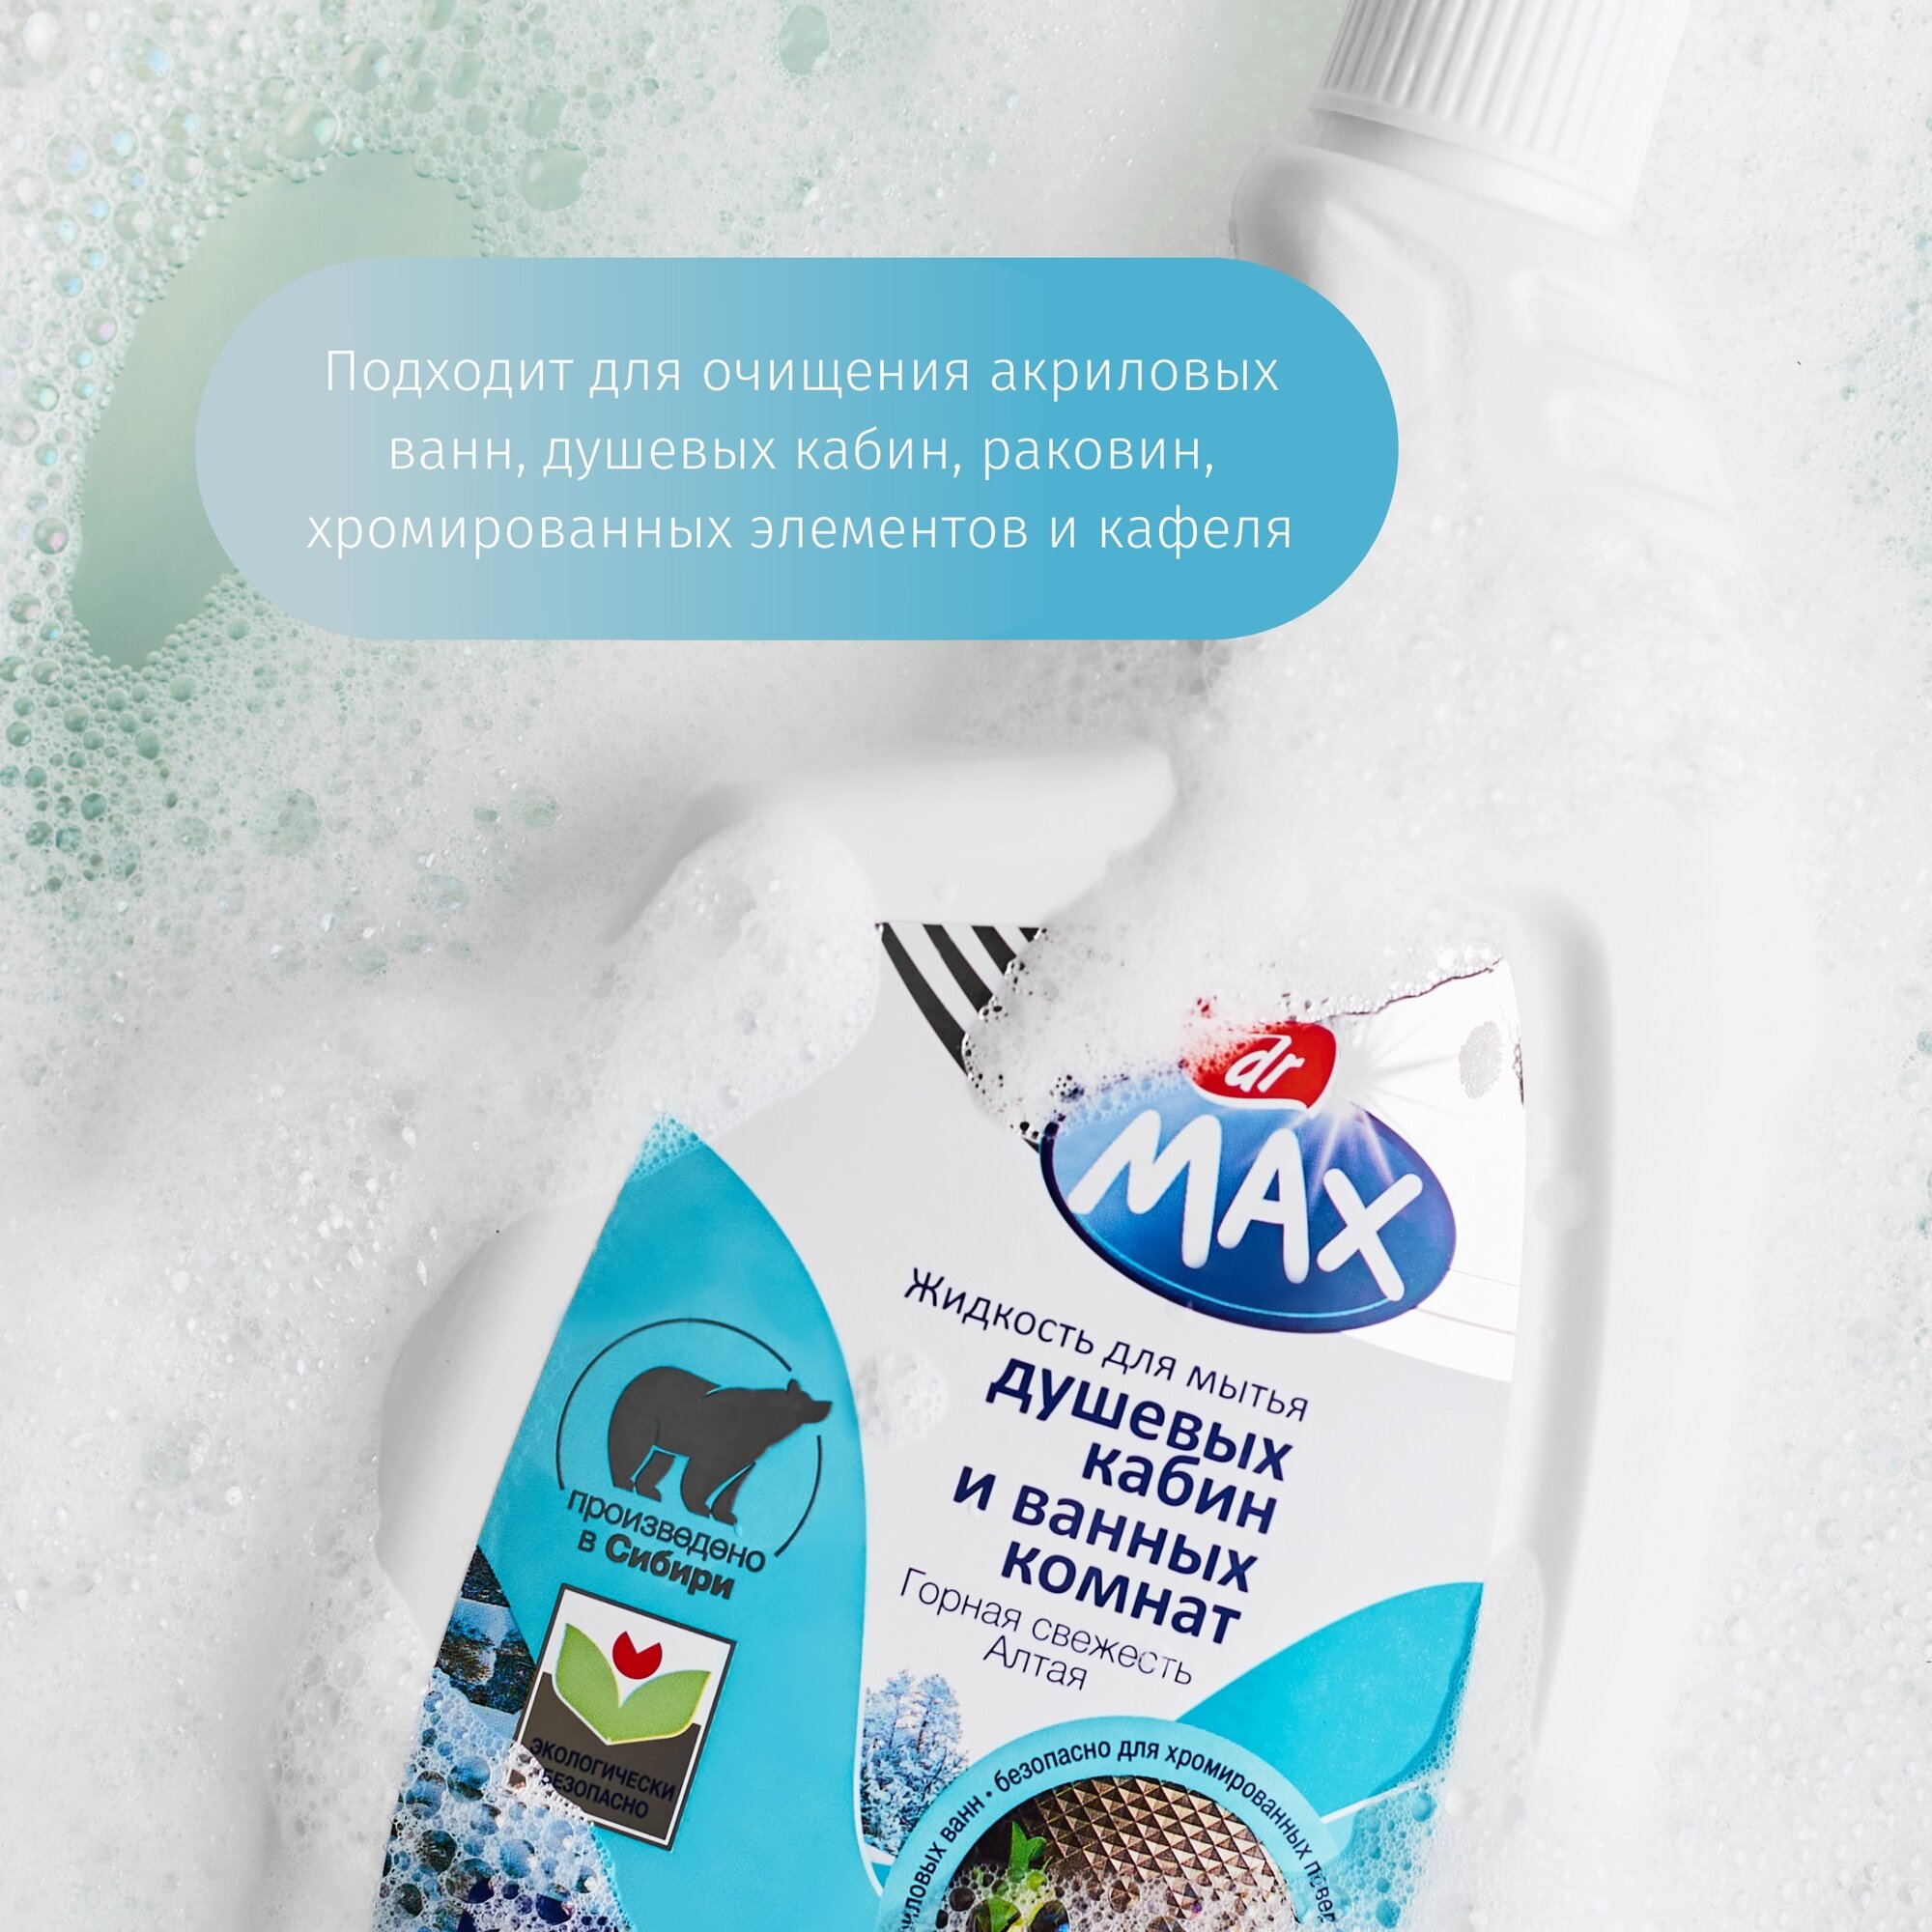 Жидкость для мытья душевых и ванных Dr MAX "Горная свежесть Алтая", 750мл - фото №8